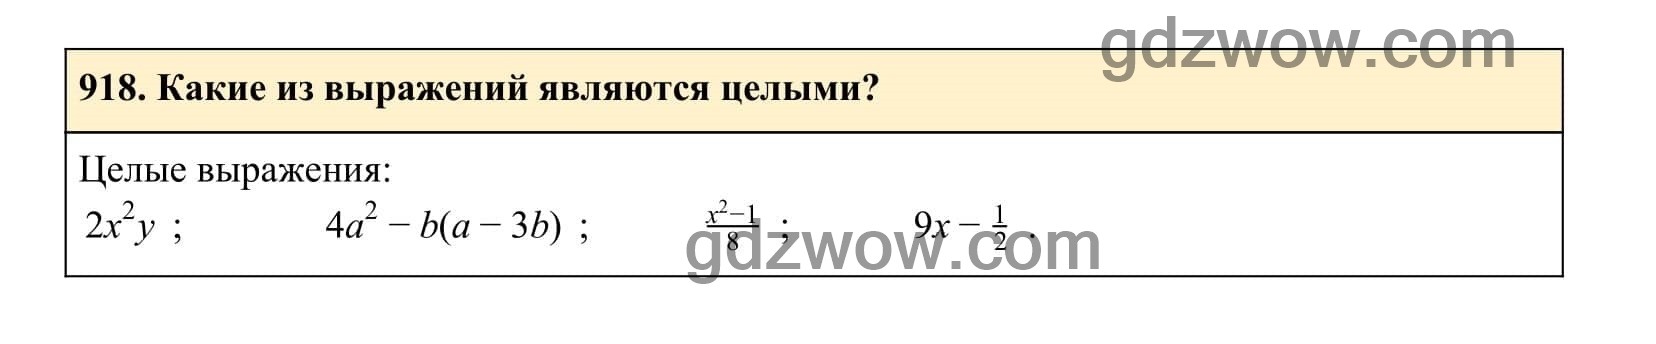 Упражнение 918 - ГДЗ по Алгебре 7 класс Учебник Макарычев (решебник) - GDZwow